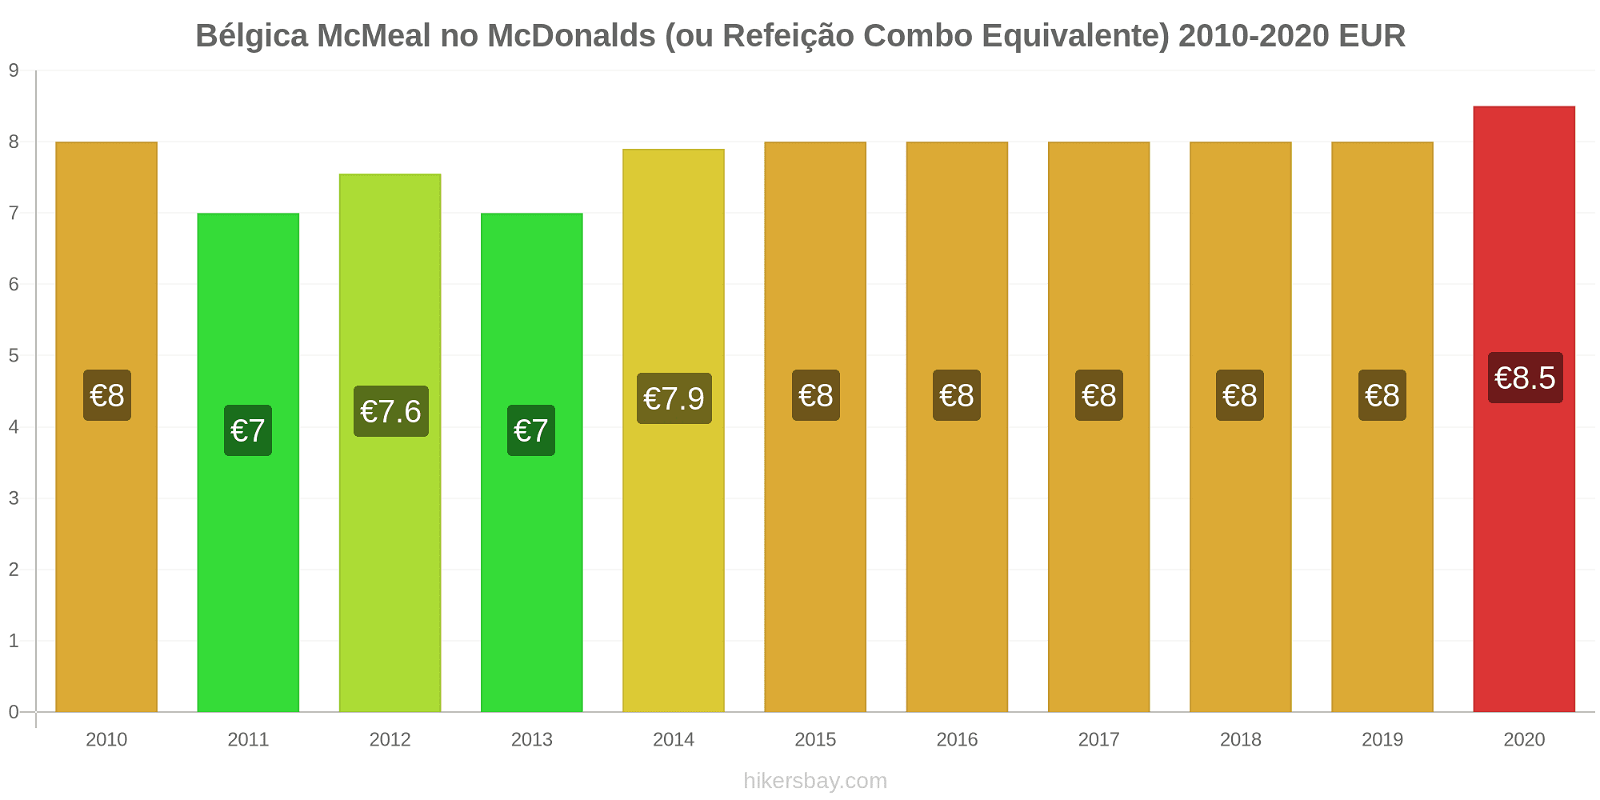 Bélgica variação de preço McMeal no McDonald ' s (ou refeição Combo equivalente) hikersbay.com